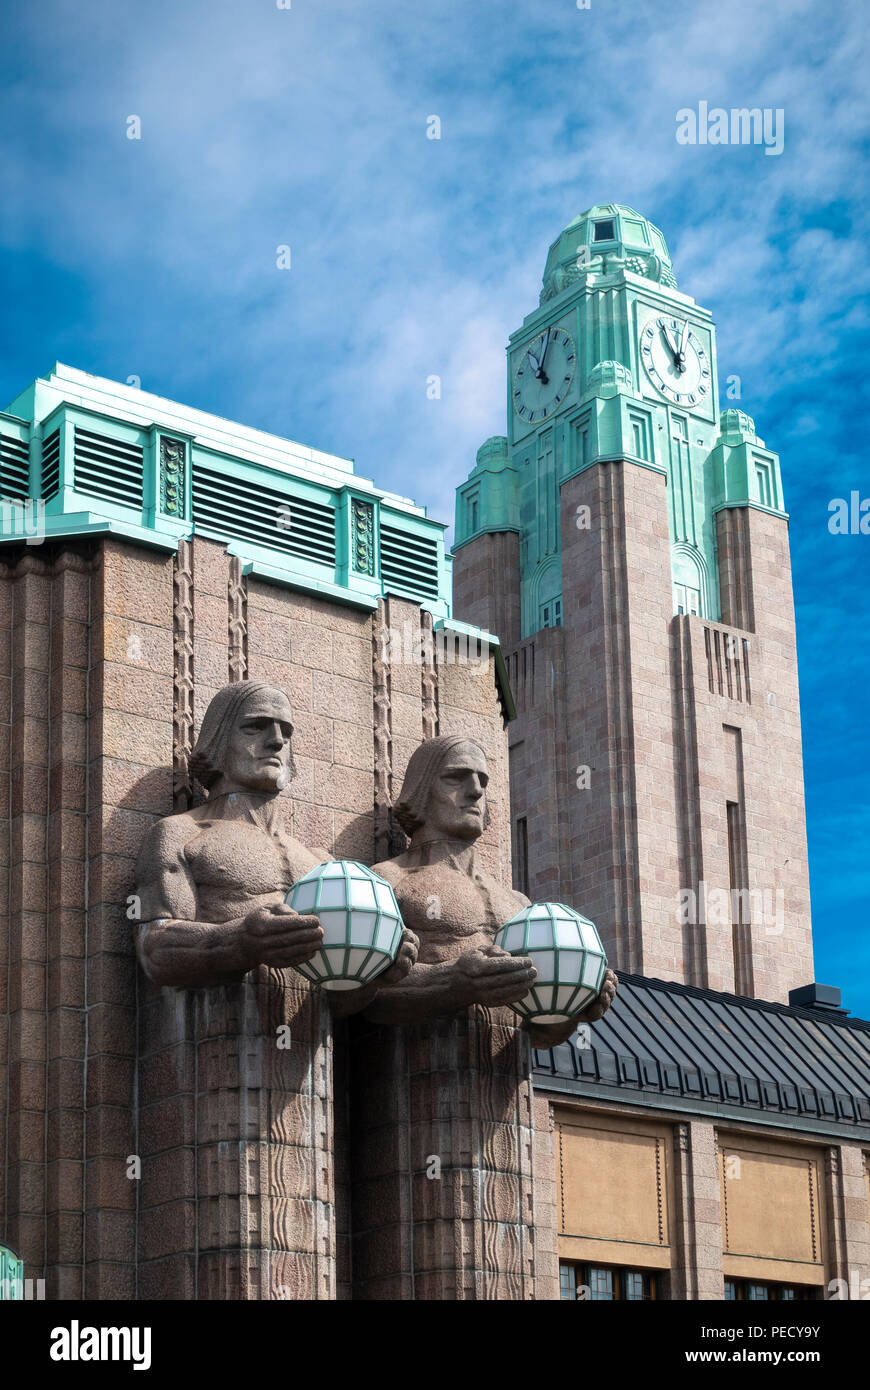 Hauptbahnhof Helsinki mit zwei steinerne Männer Statuen, die Lampen und die Station Clock Tower. Stockfoto